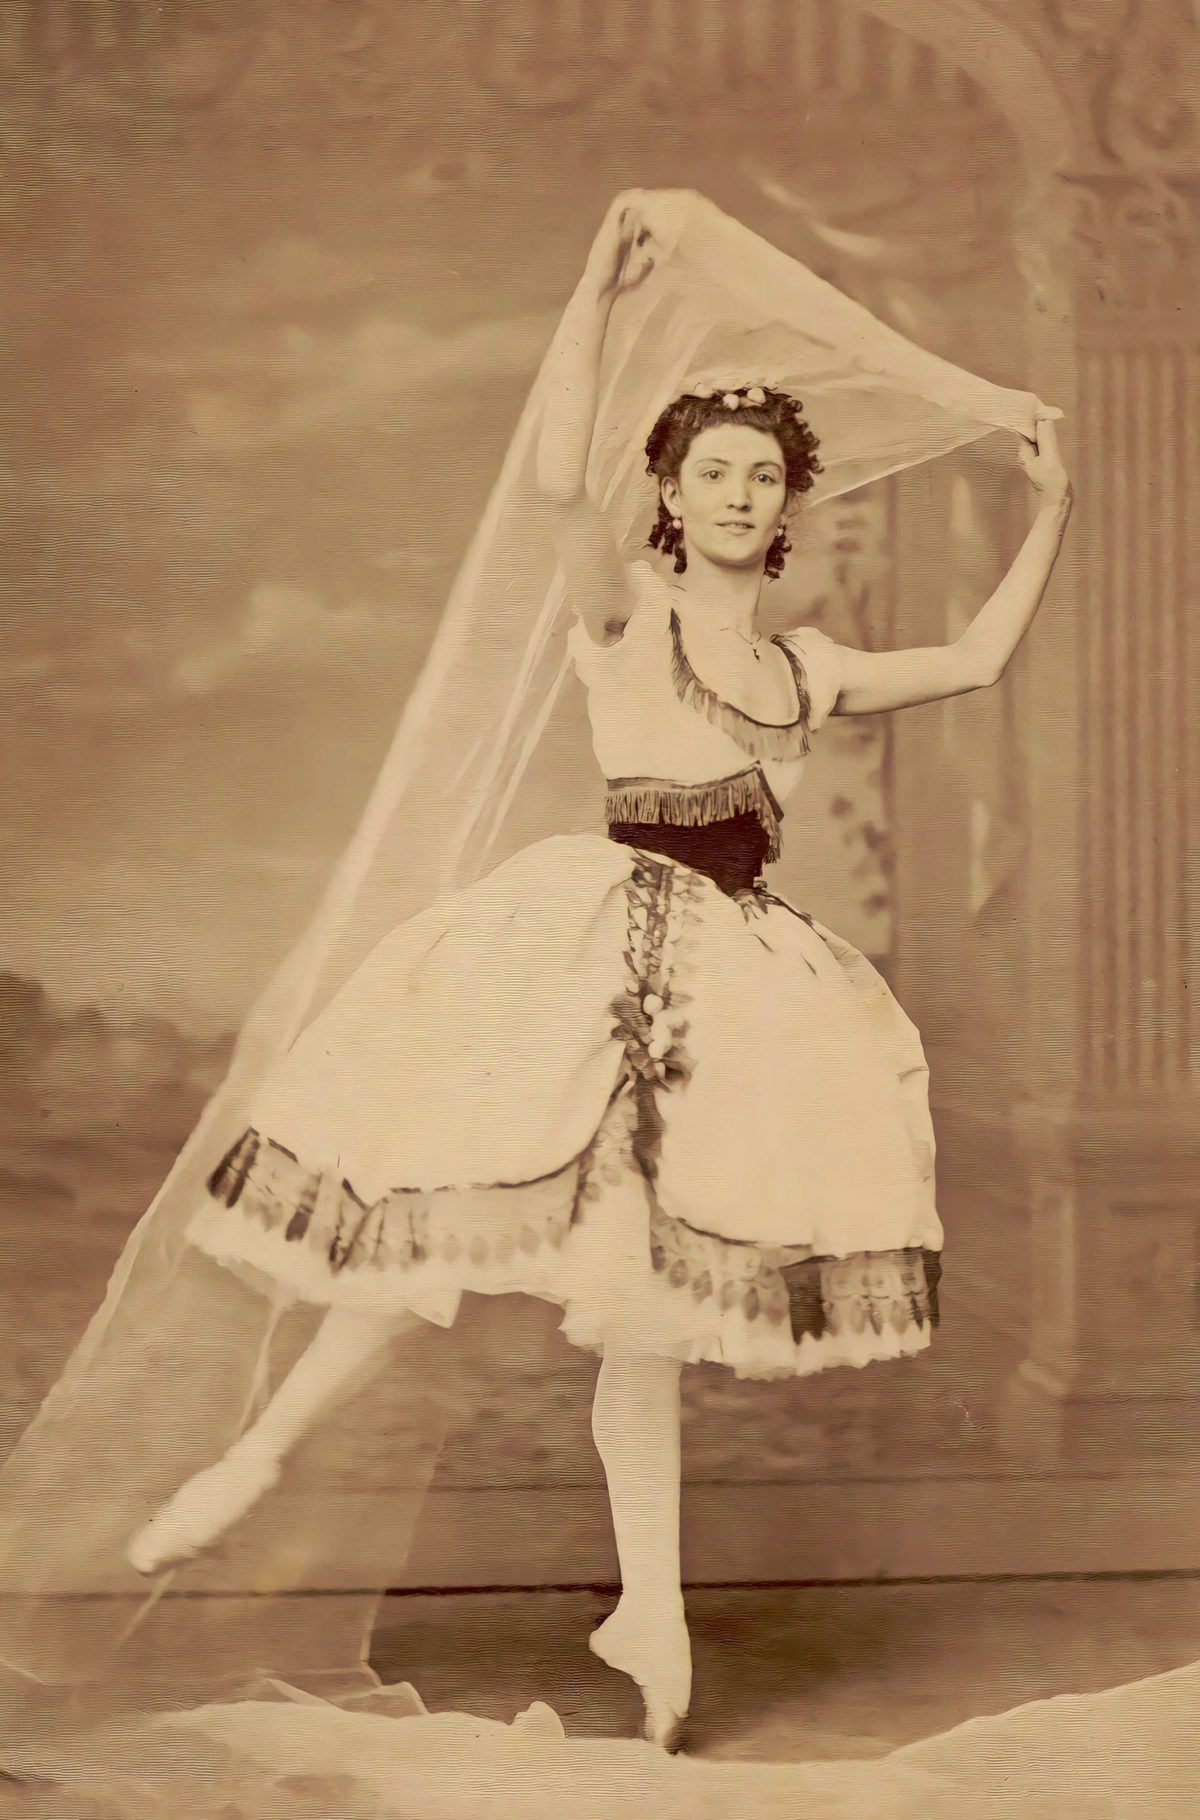 Giuseppina Morlacchi dancing on stage